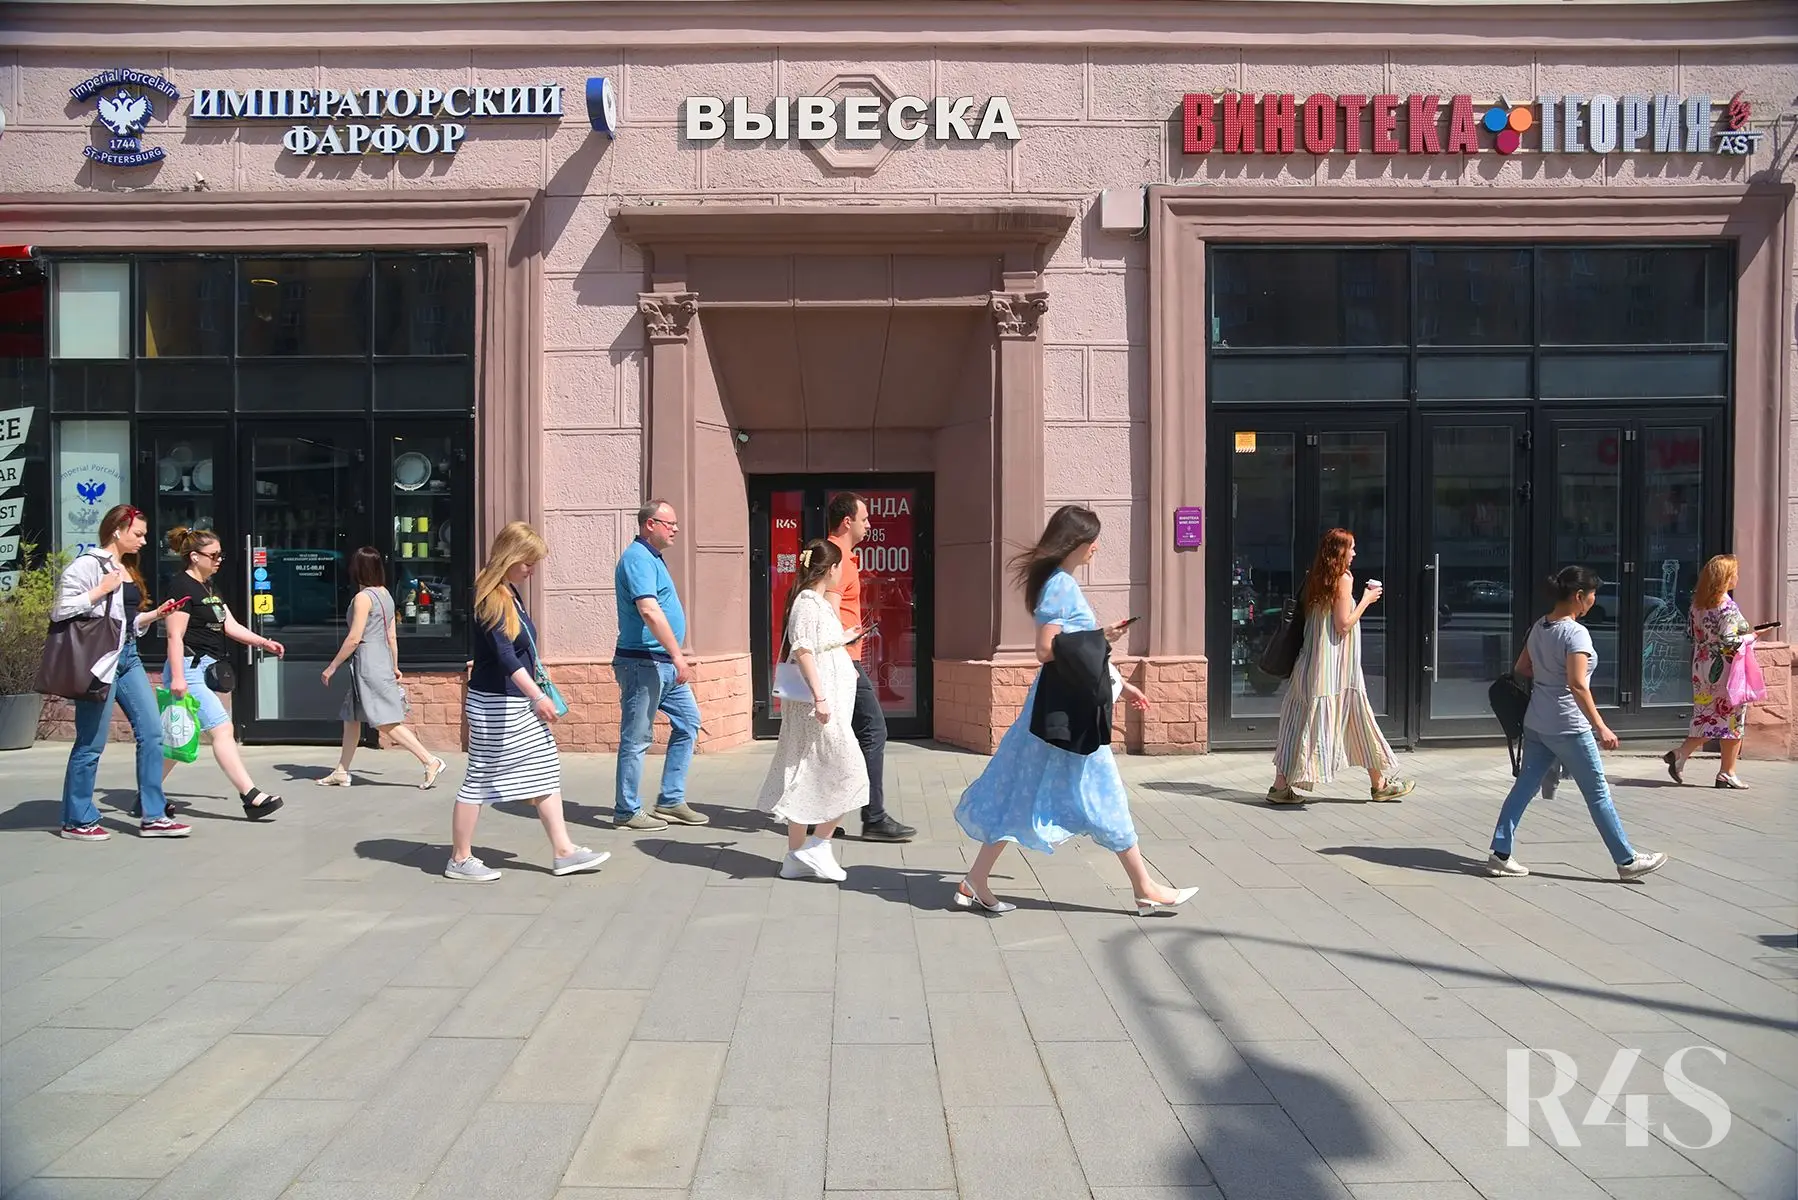 Аренда торговых помещений площадью 12.2 - 189.5 м2 в Москве:  Красная Пресня, 32-34 R4S | Realty4Sale